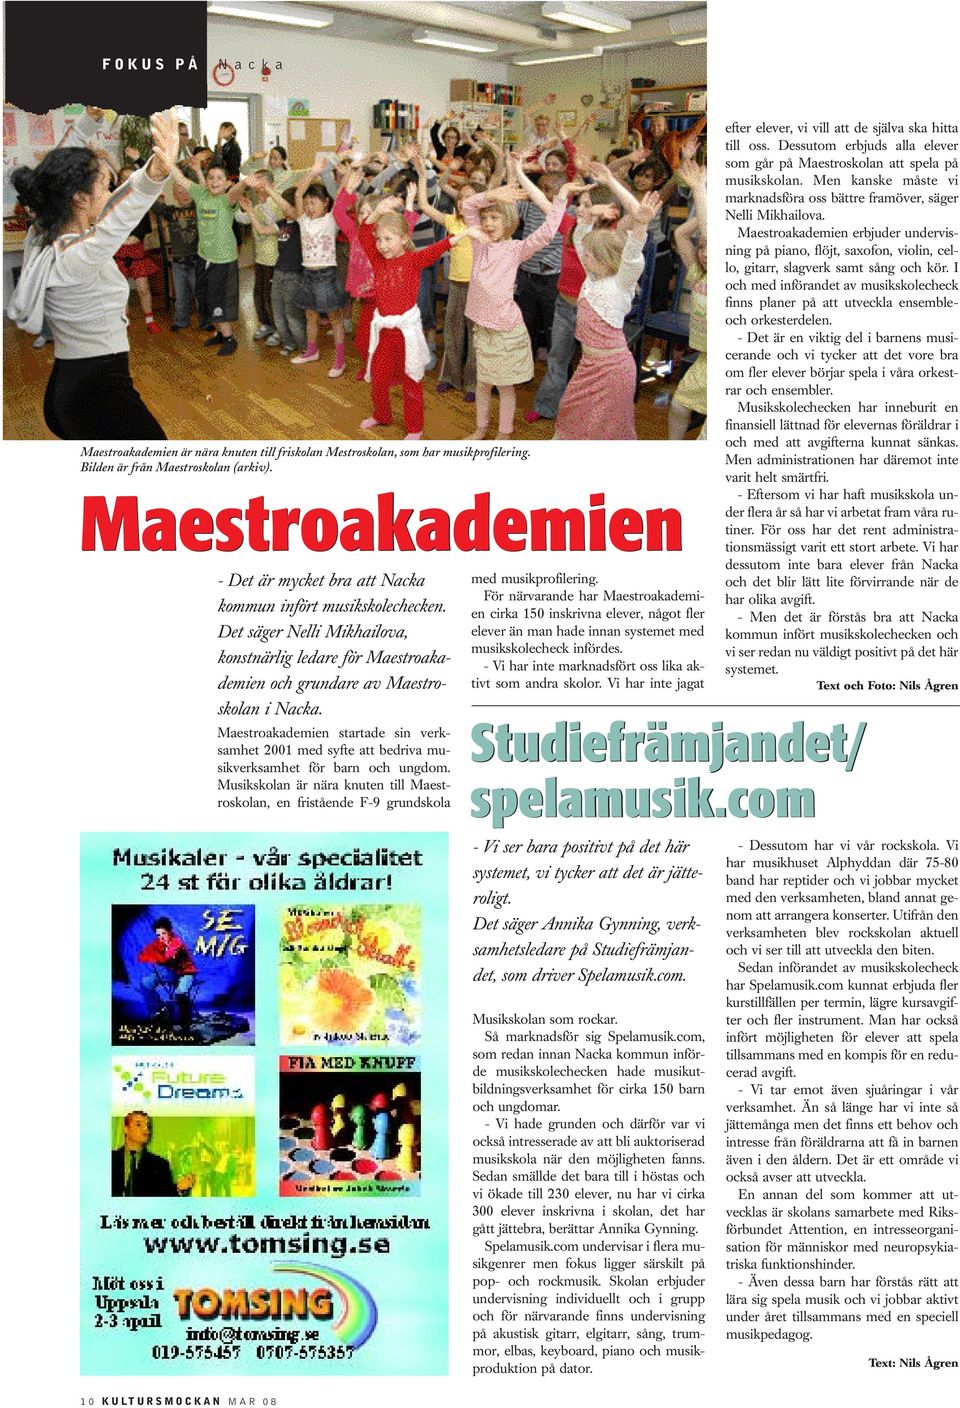 Maestroakademien startade sin verksamhet 2001 med syfte att bedriva musikverksamhet för barn och ungdom.